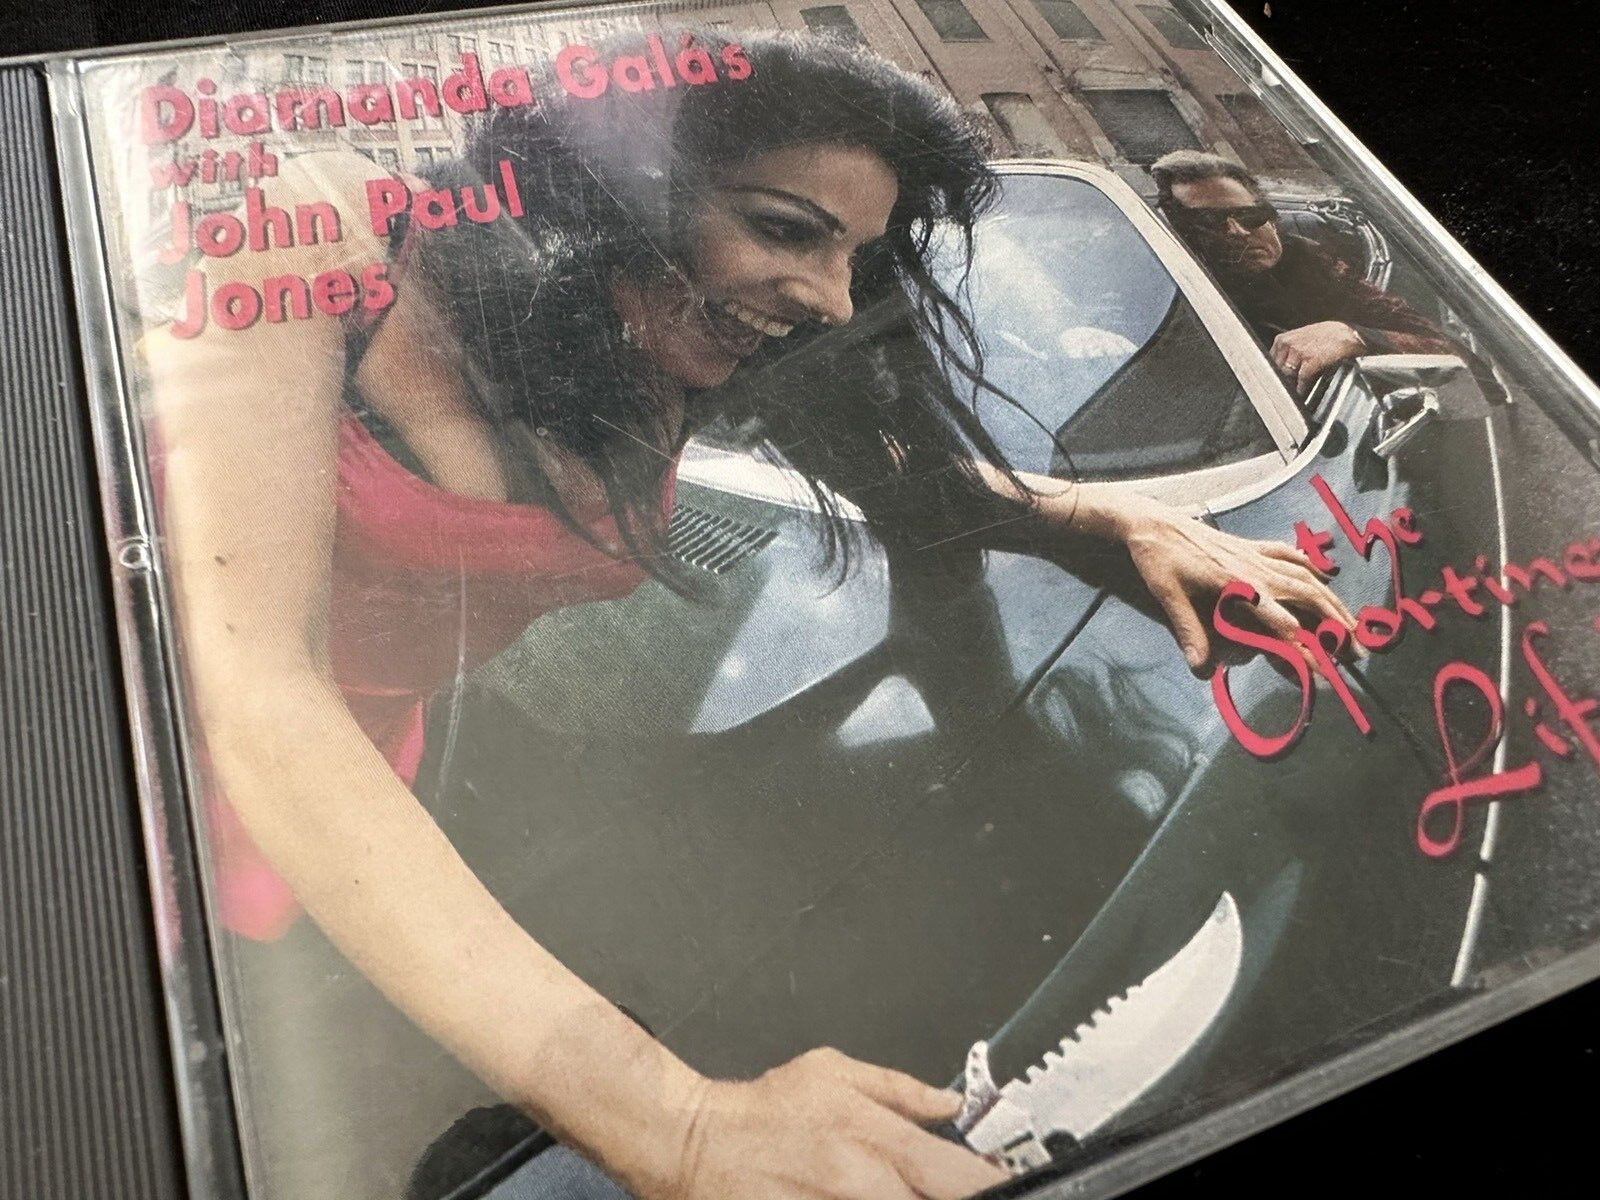 DIAMANDA GALAS Sporting Life VERY GOOD CD with John Paul Jones of Led Zeppelin